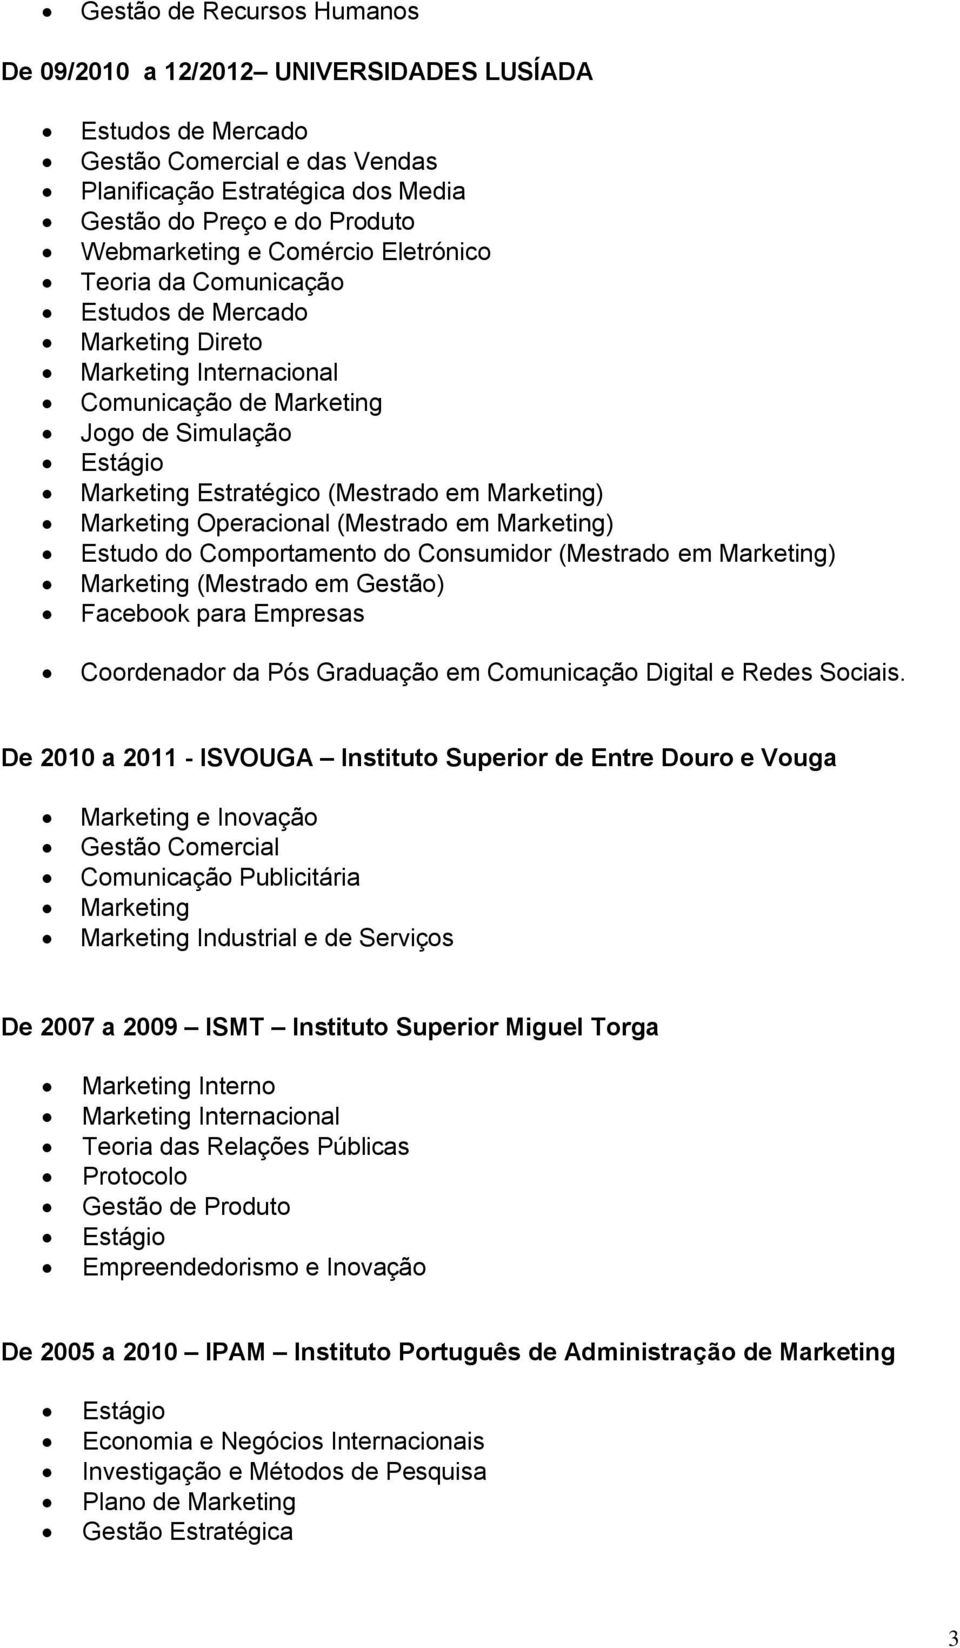 Marketing Operacional (Mestrado em Marketing) Estudo do Comportamento do Consumidor (Mestrado em Marketing) Marketing (Mestrado em Gestão) Facebook para Empresas Coordenador da Pós Graduação em